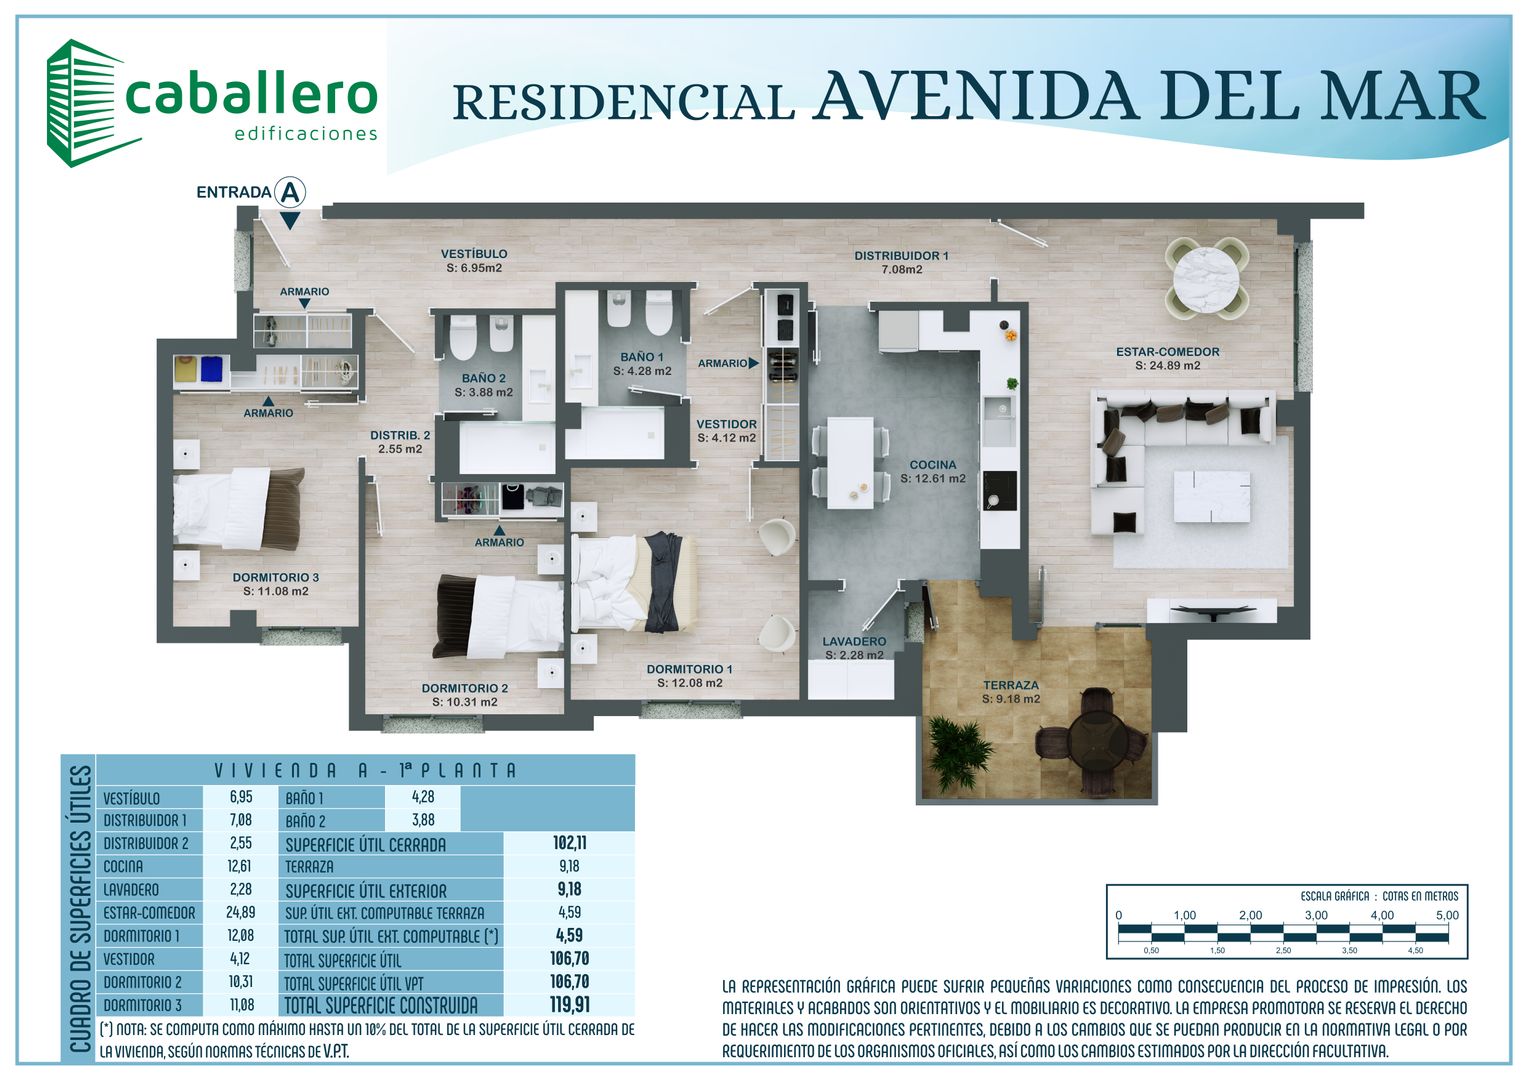 Planos Comerciales 3D _ Residencial Avd. del Mar en Ciudad Real., A3D INFOGRAFIA A3D INFOGRAFIA